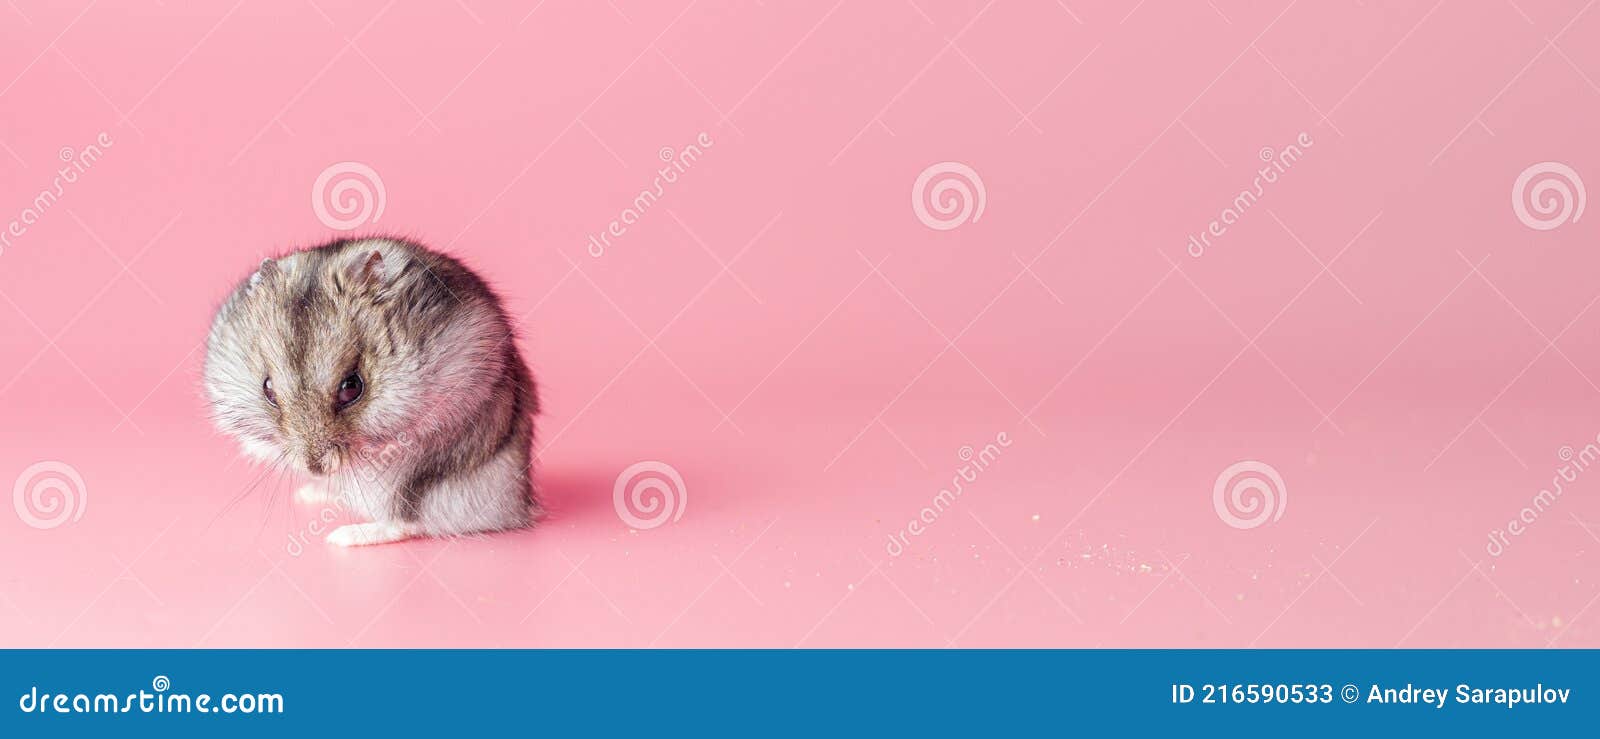 хомяк джунгарик злой вероломный на розовом фоне копировать пространство  Стоковое Изображение - изображение насчитывающей шерсть, урок: 216590533